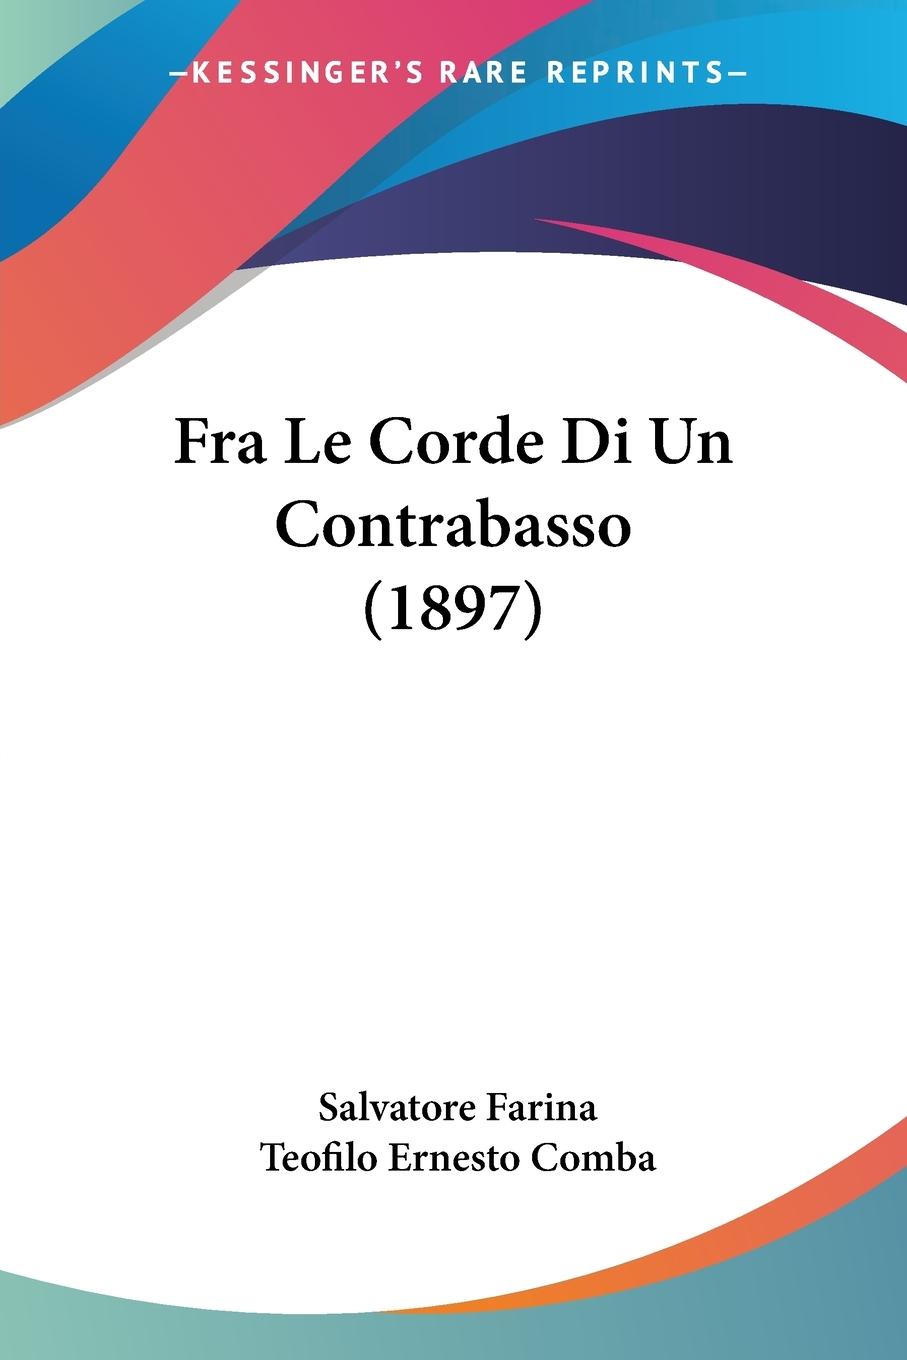 Fra Le Corde Di Un Contrabasso (1897) - Farina, Salvatore Comba, Teofilo Ernesto